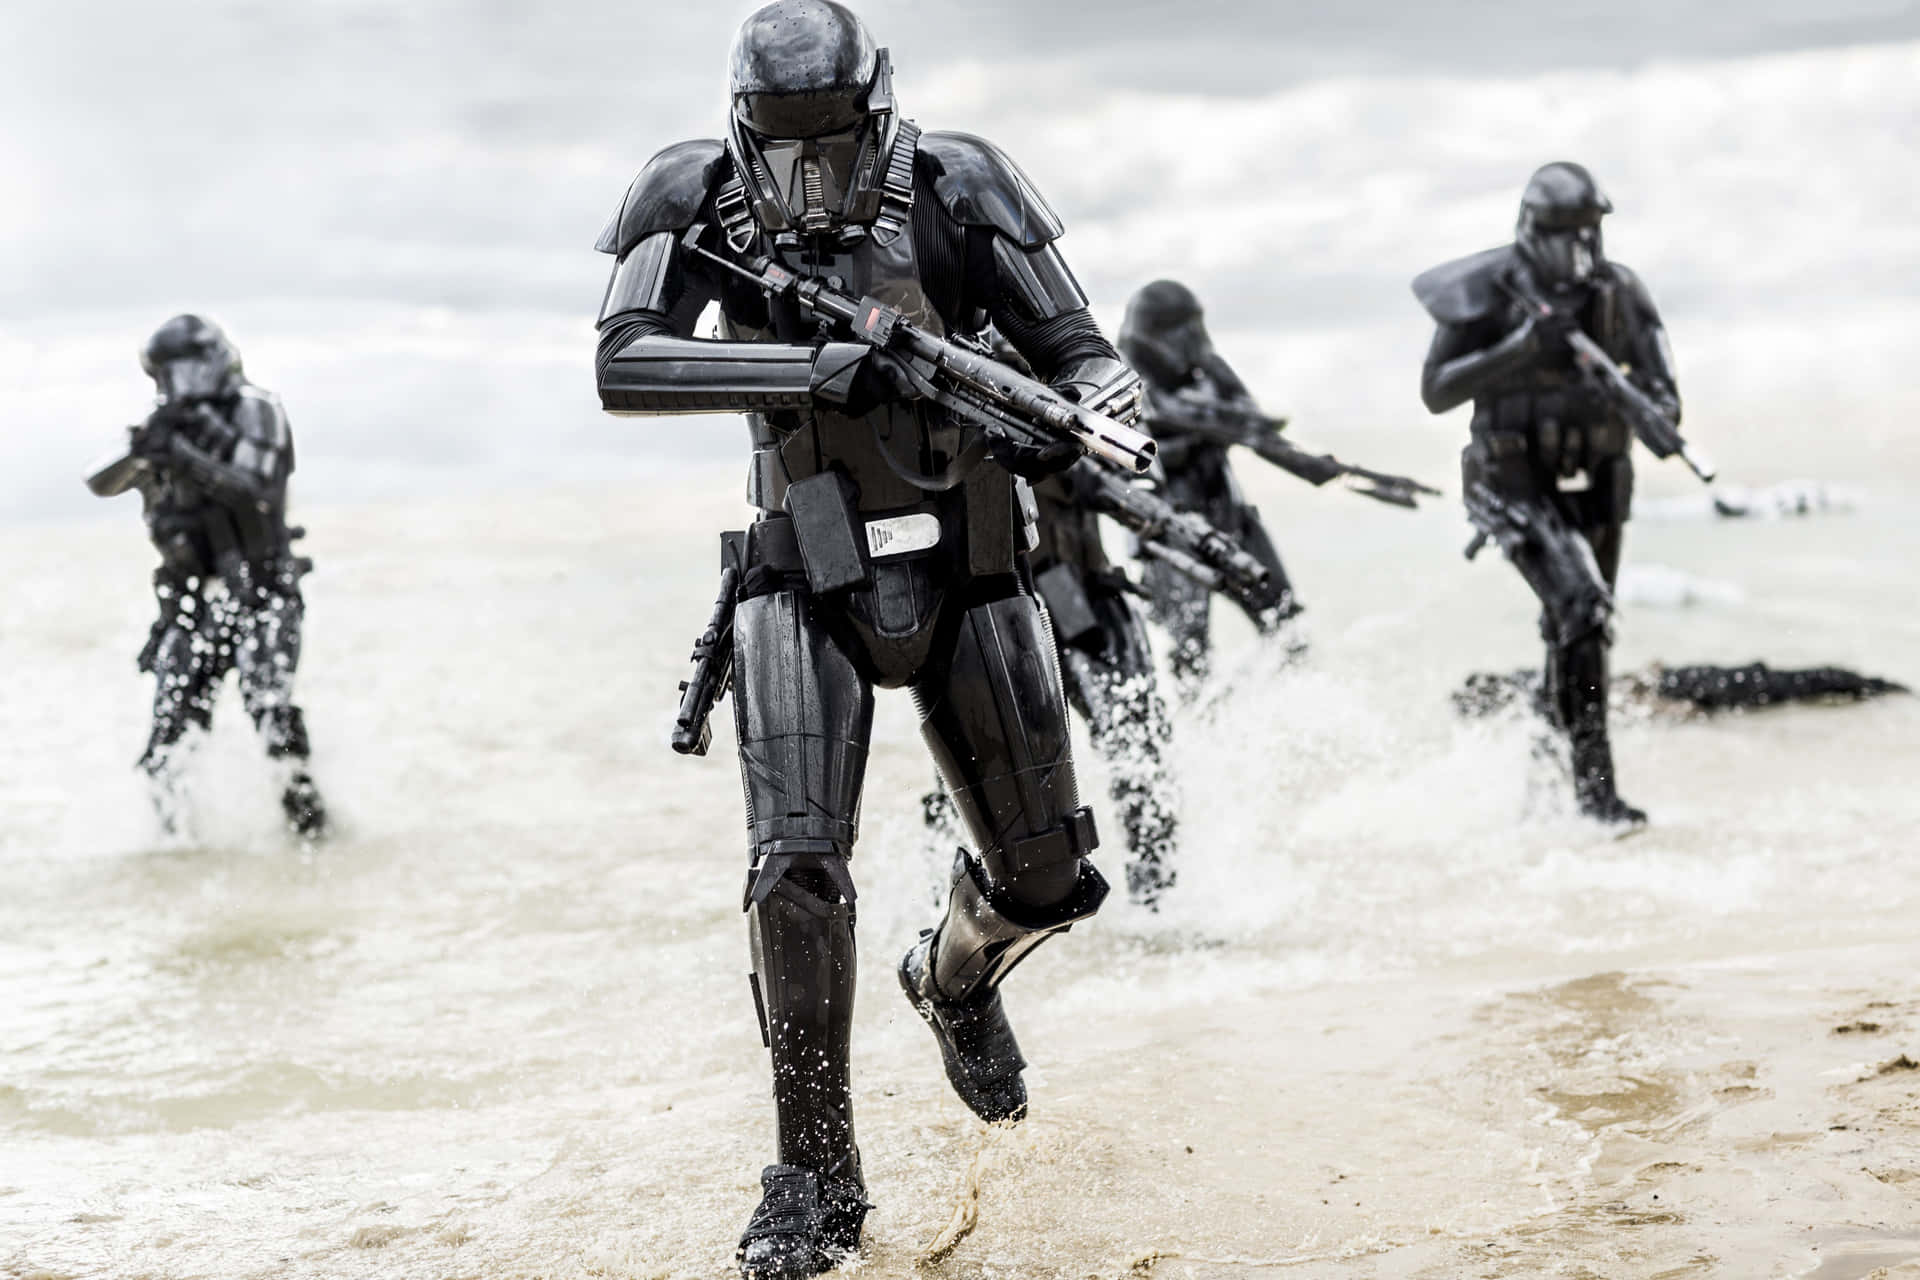 Stormtrooper wielding a blaster rifle in a futuristic battle scene Wallpaper